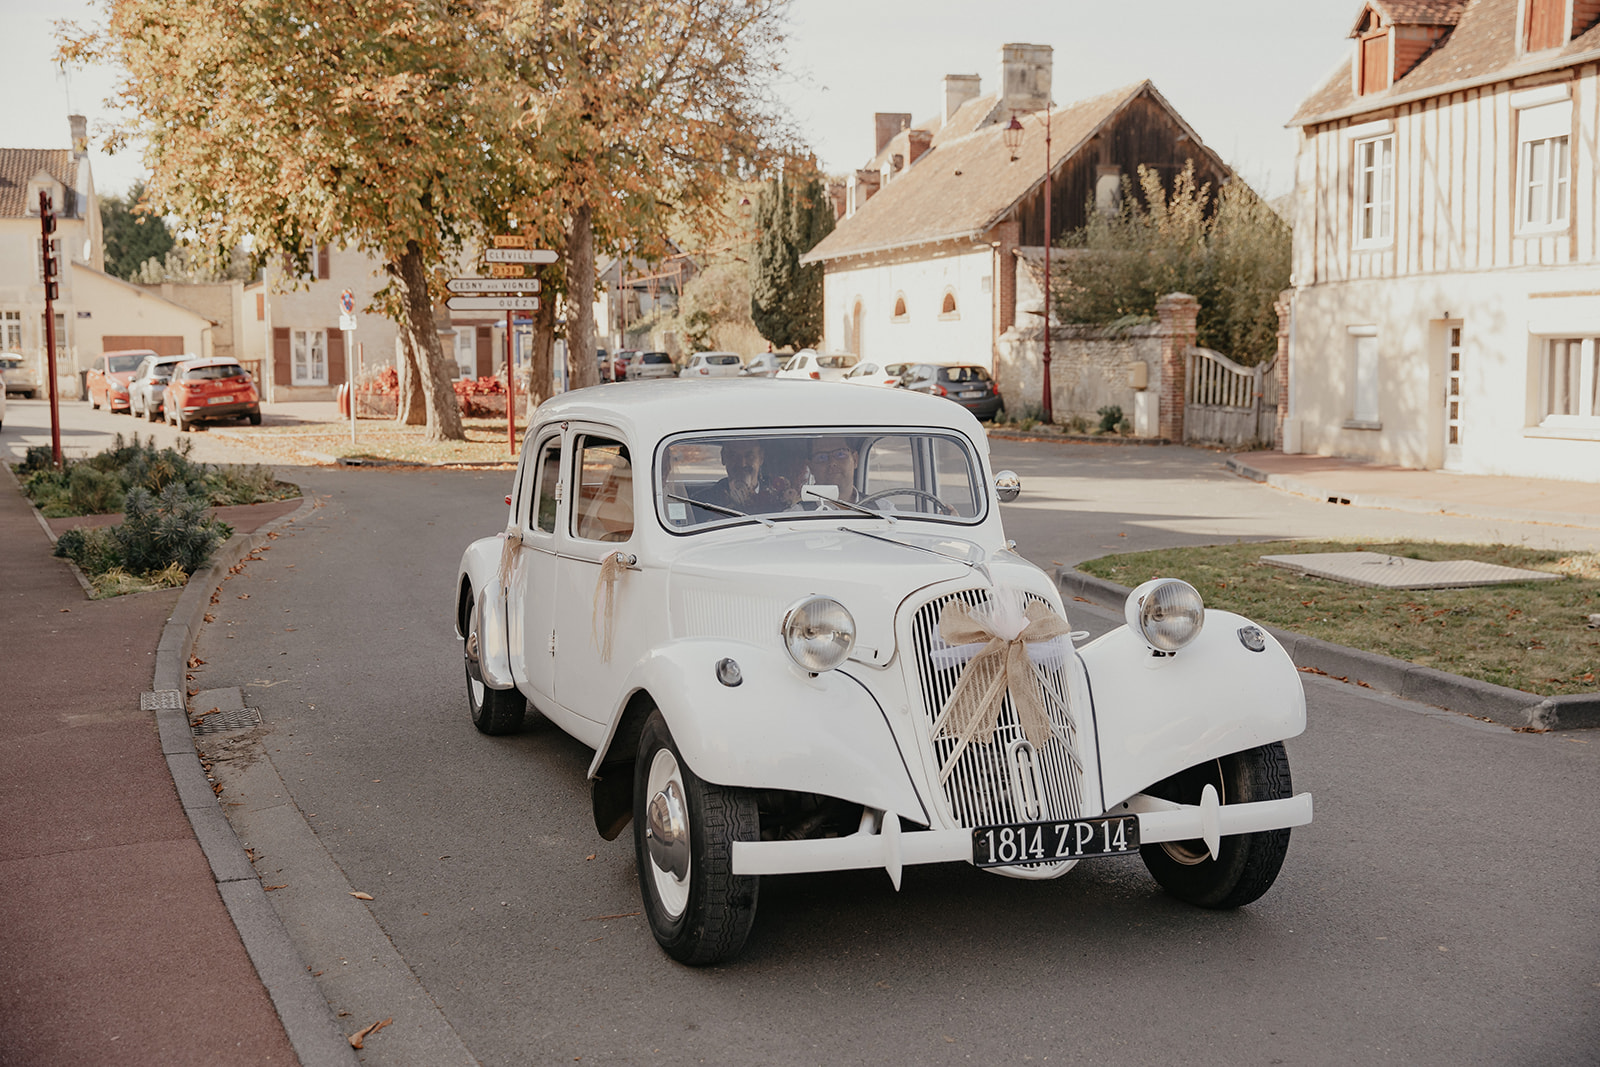 Un couple normand décide de se marier en automne sur un thème vintage.